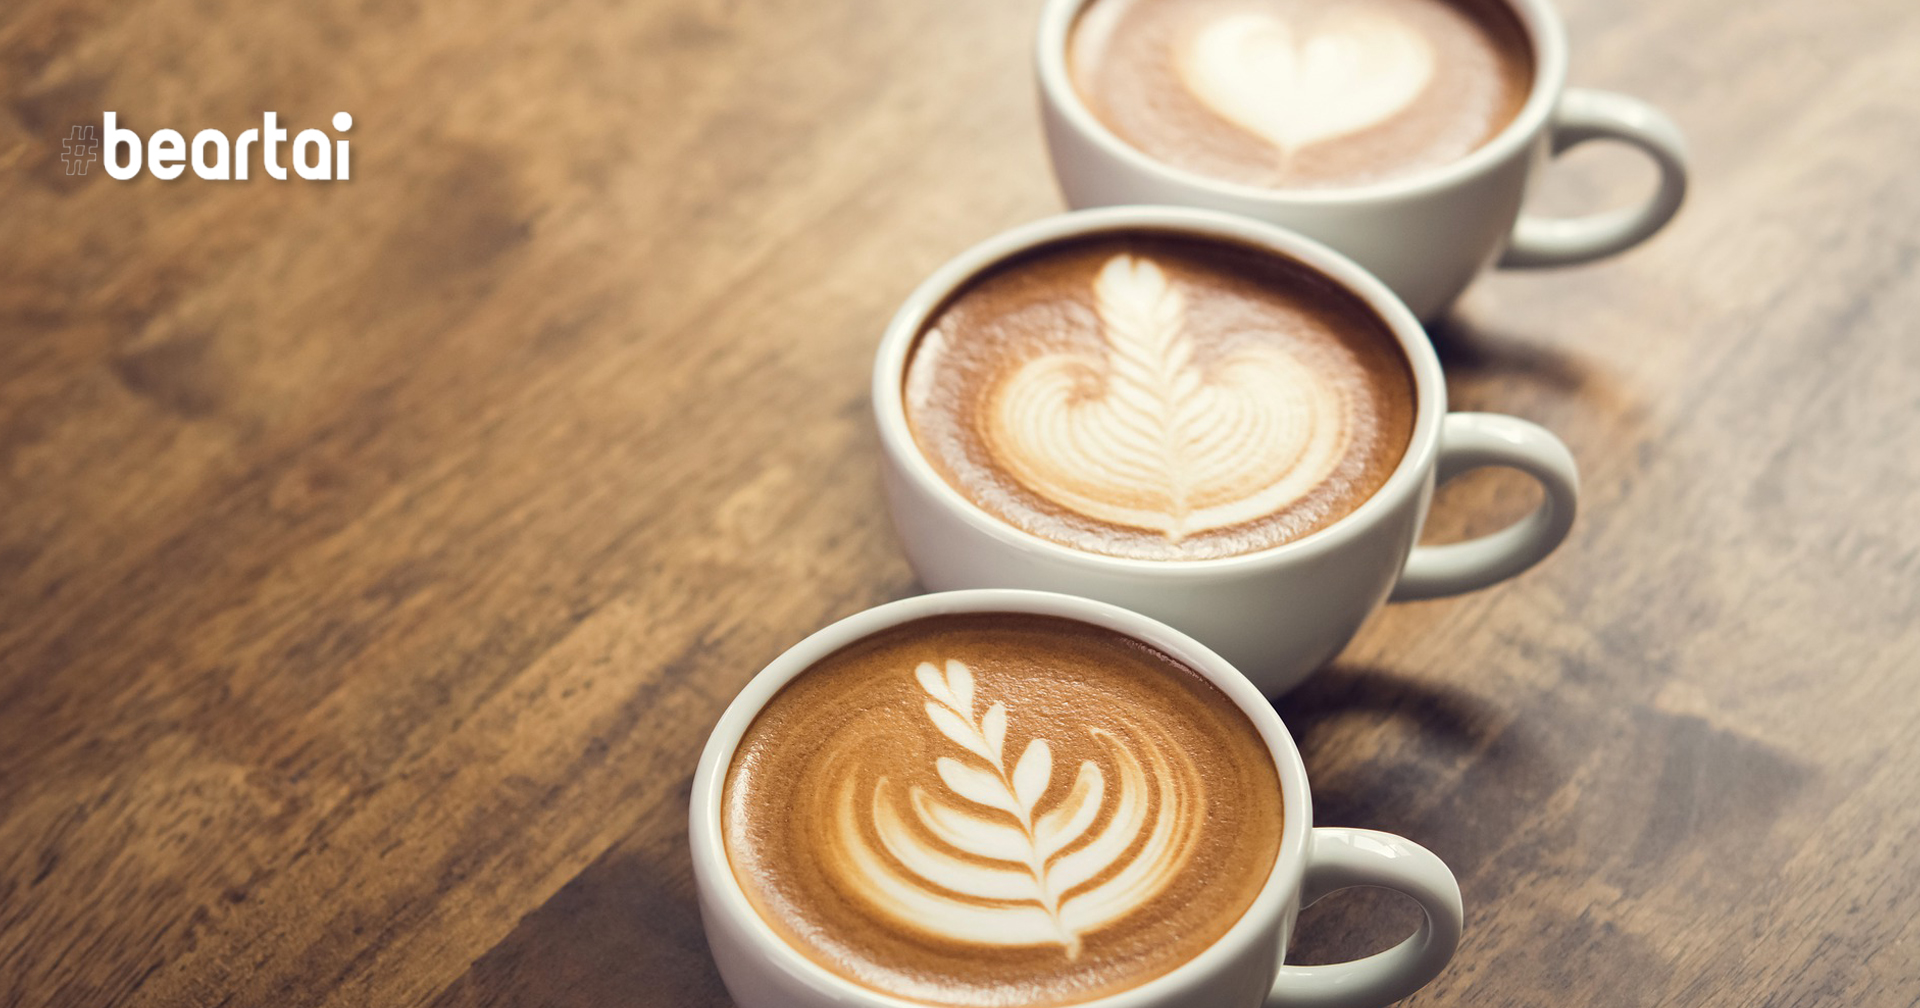 ดื่มกาแฟเกินวันละ 3 แก้ว อาจทำให้เกิดภาวะซึมเศร้า วิตกกังวล และอาการหวาดกลัว